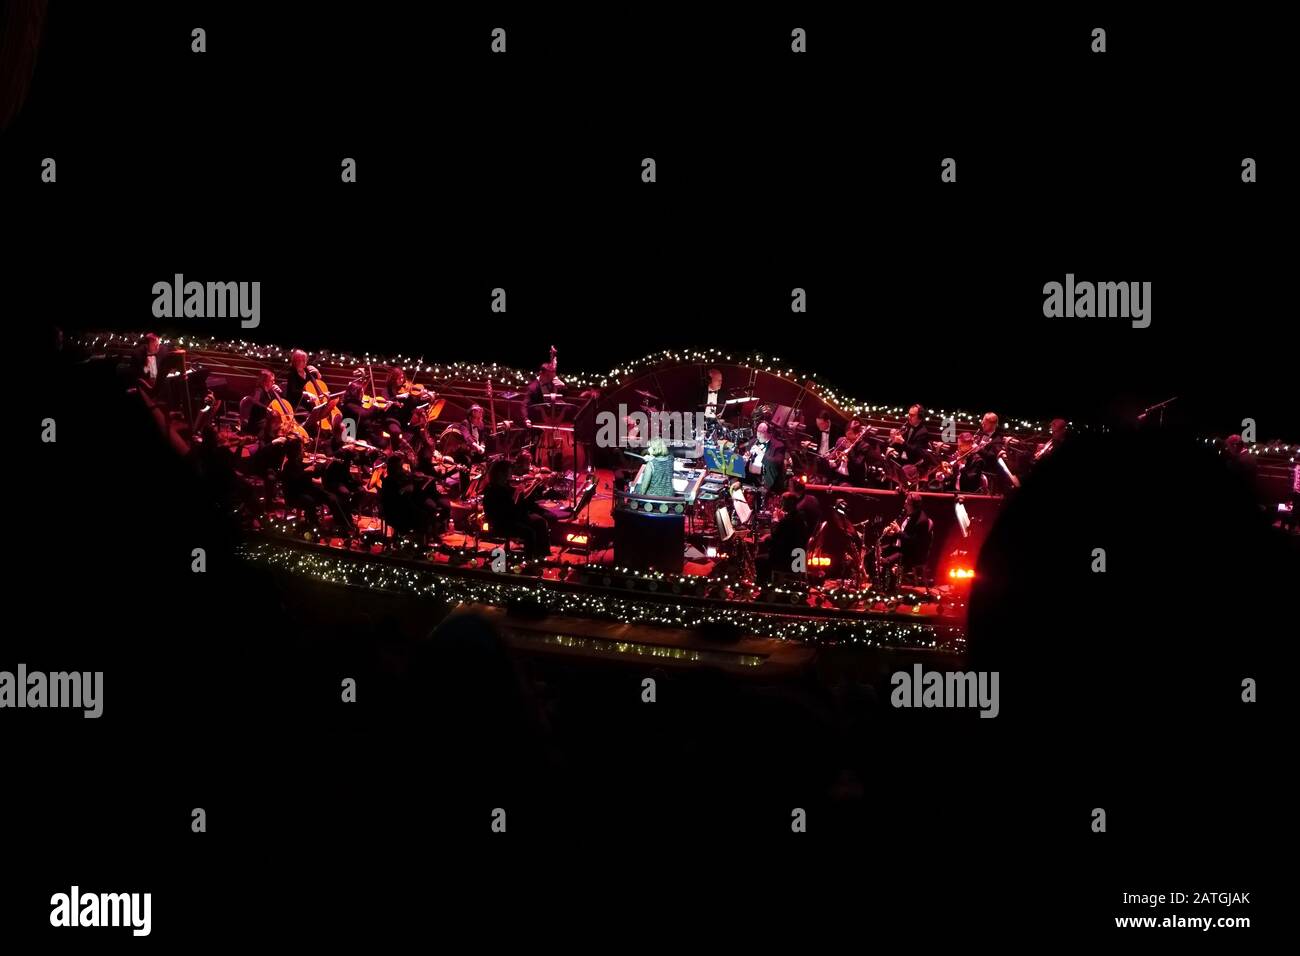 New York, NY / USA - 30 dicembre 2019: Zoomato in vista della buca dell'orchestra durante uno spettacolo di Rockettes al radio City Music Hall Foto Stock